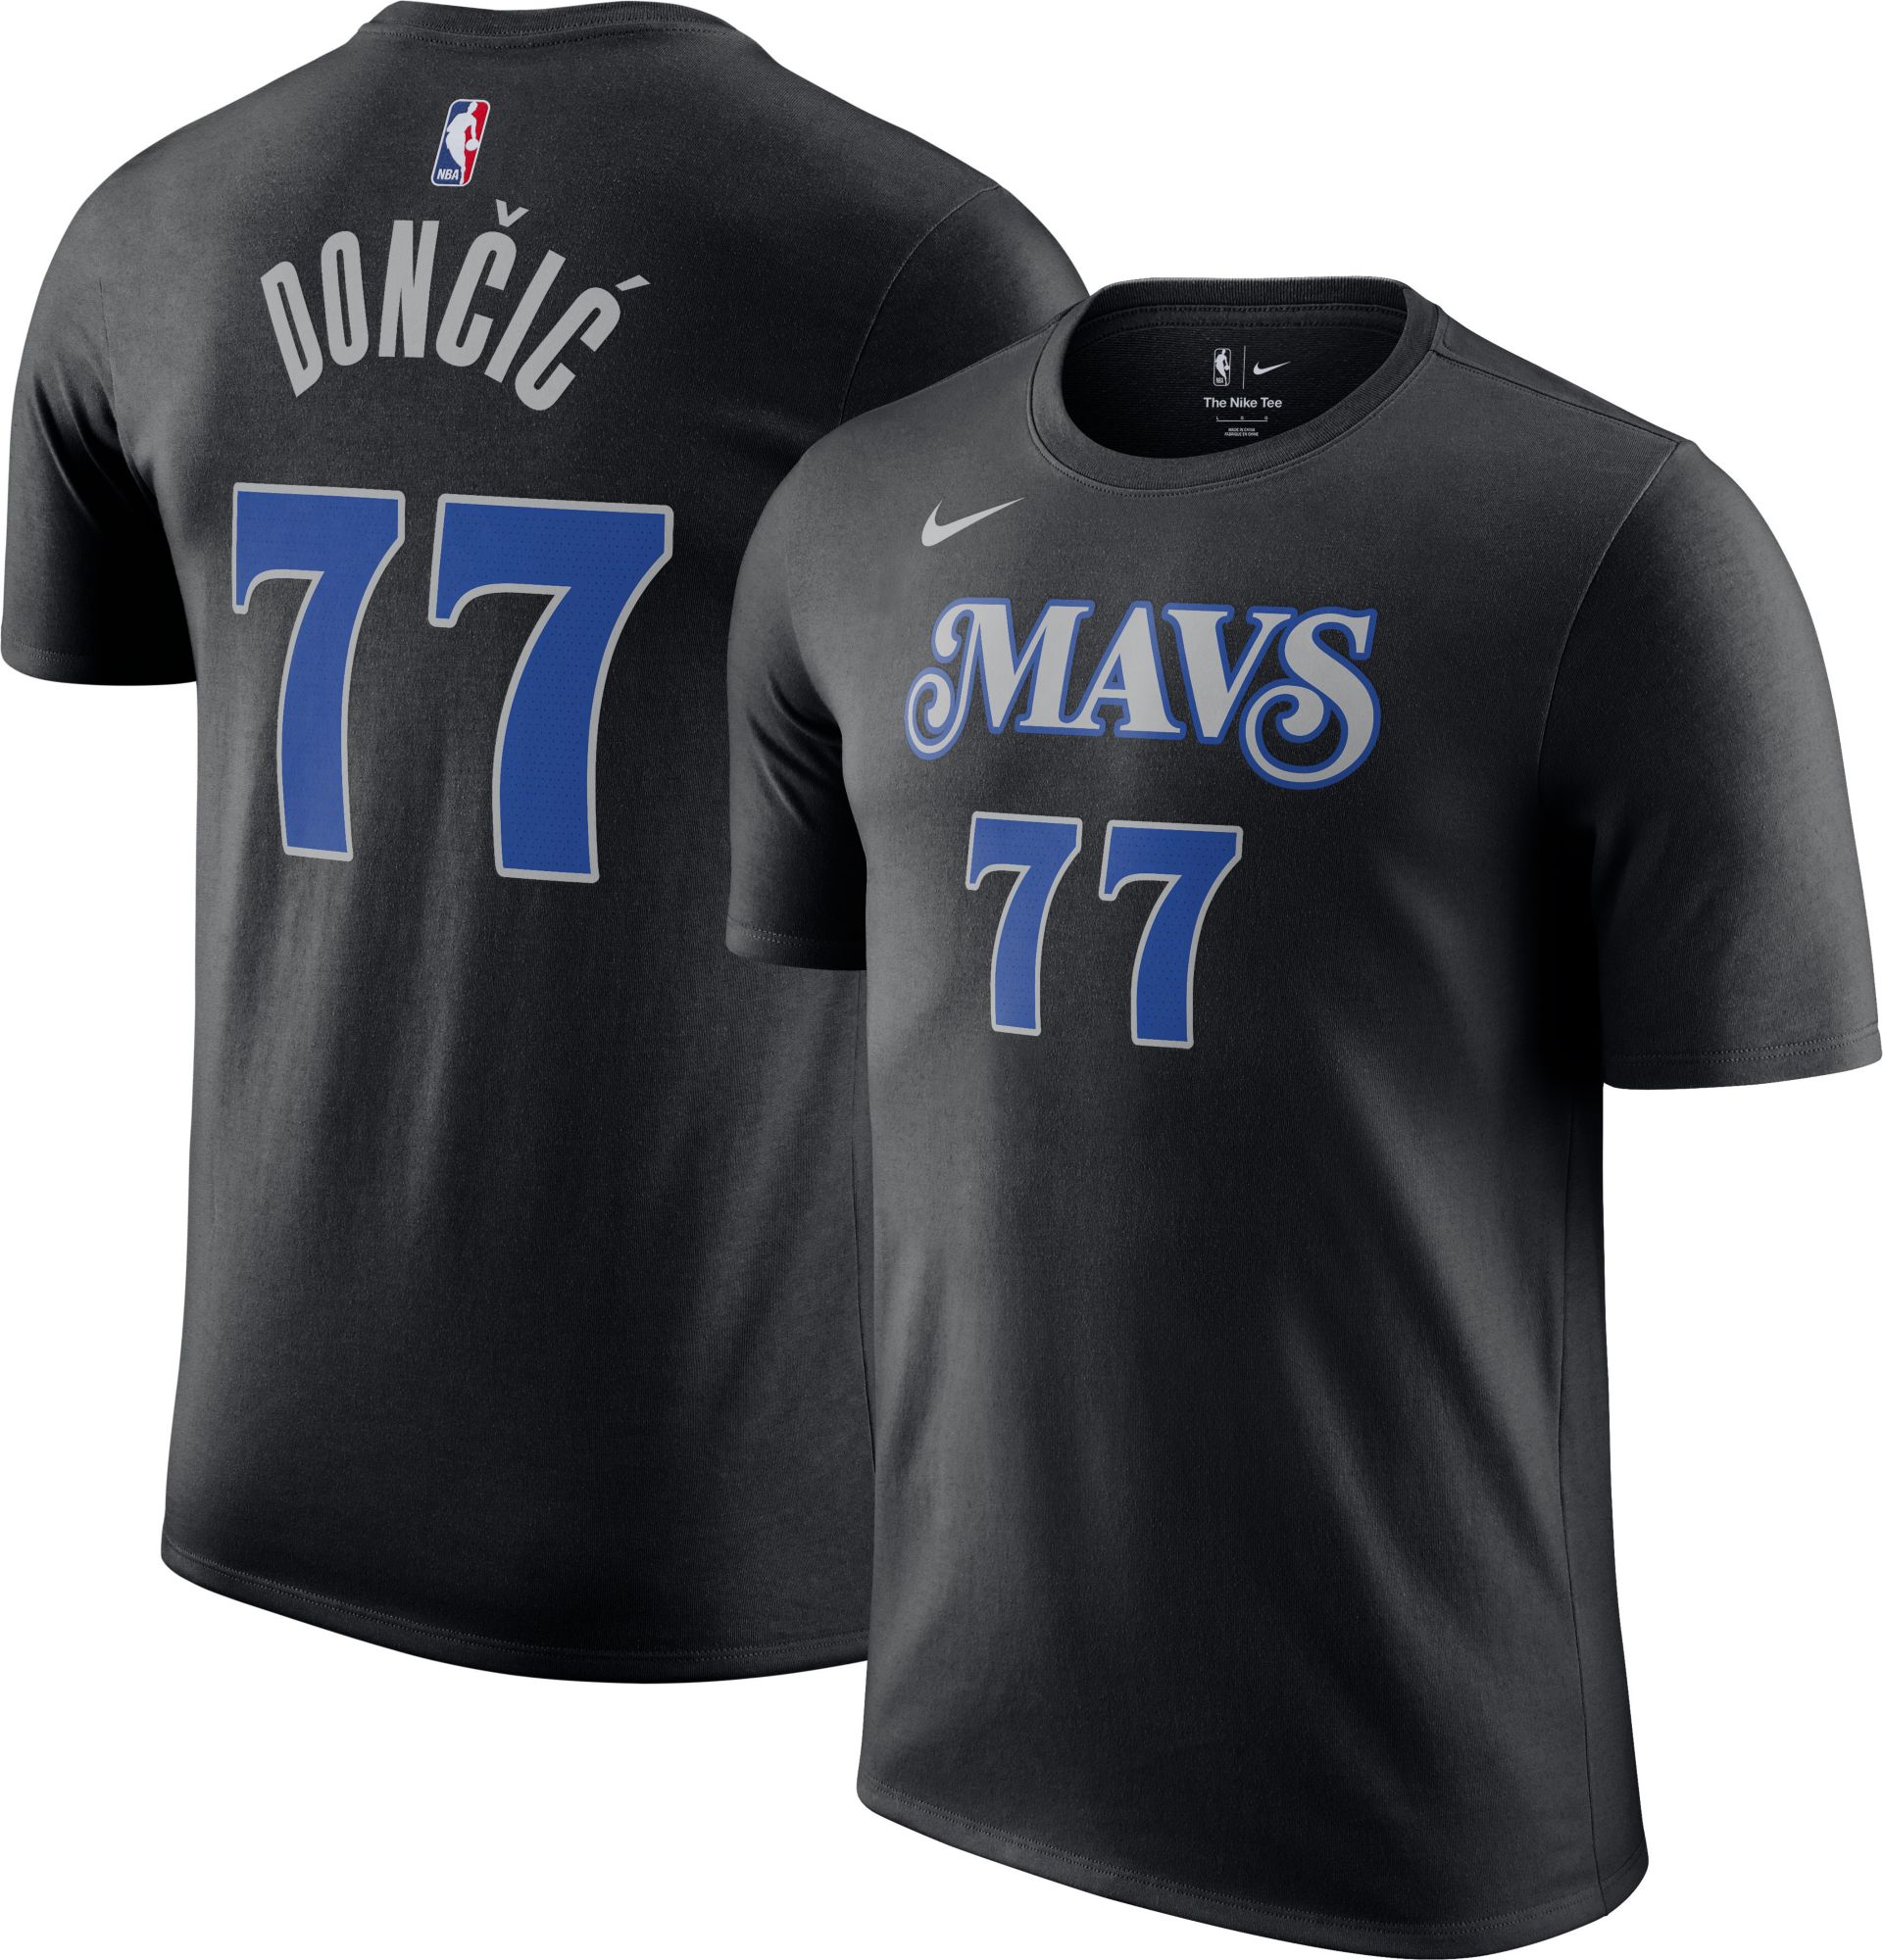 Dallas Mavericks fan merchandise